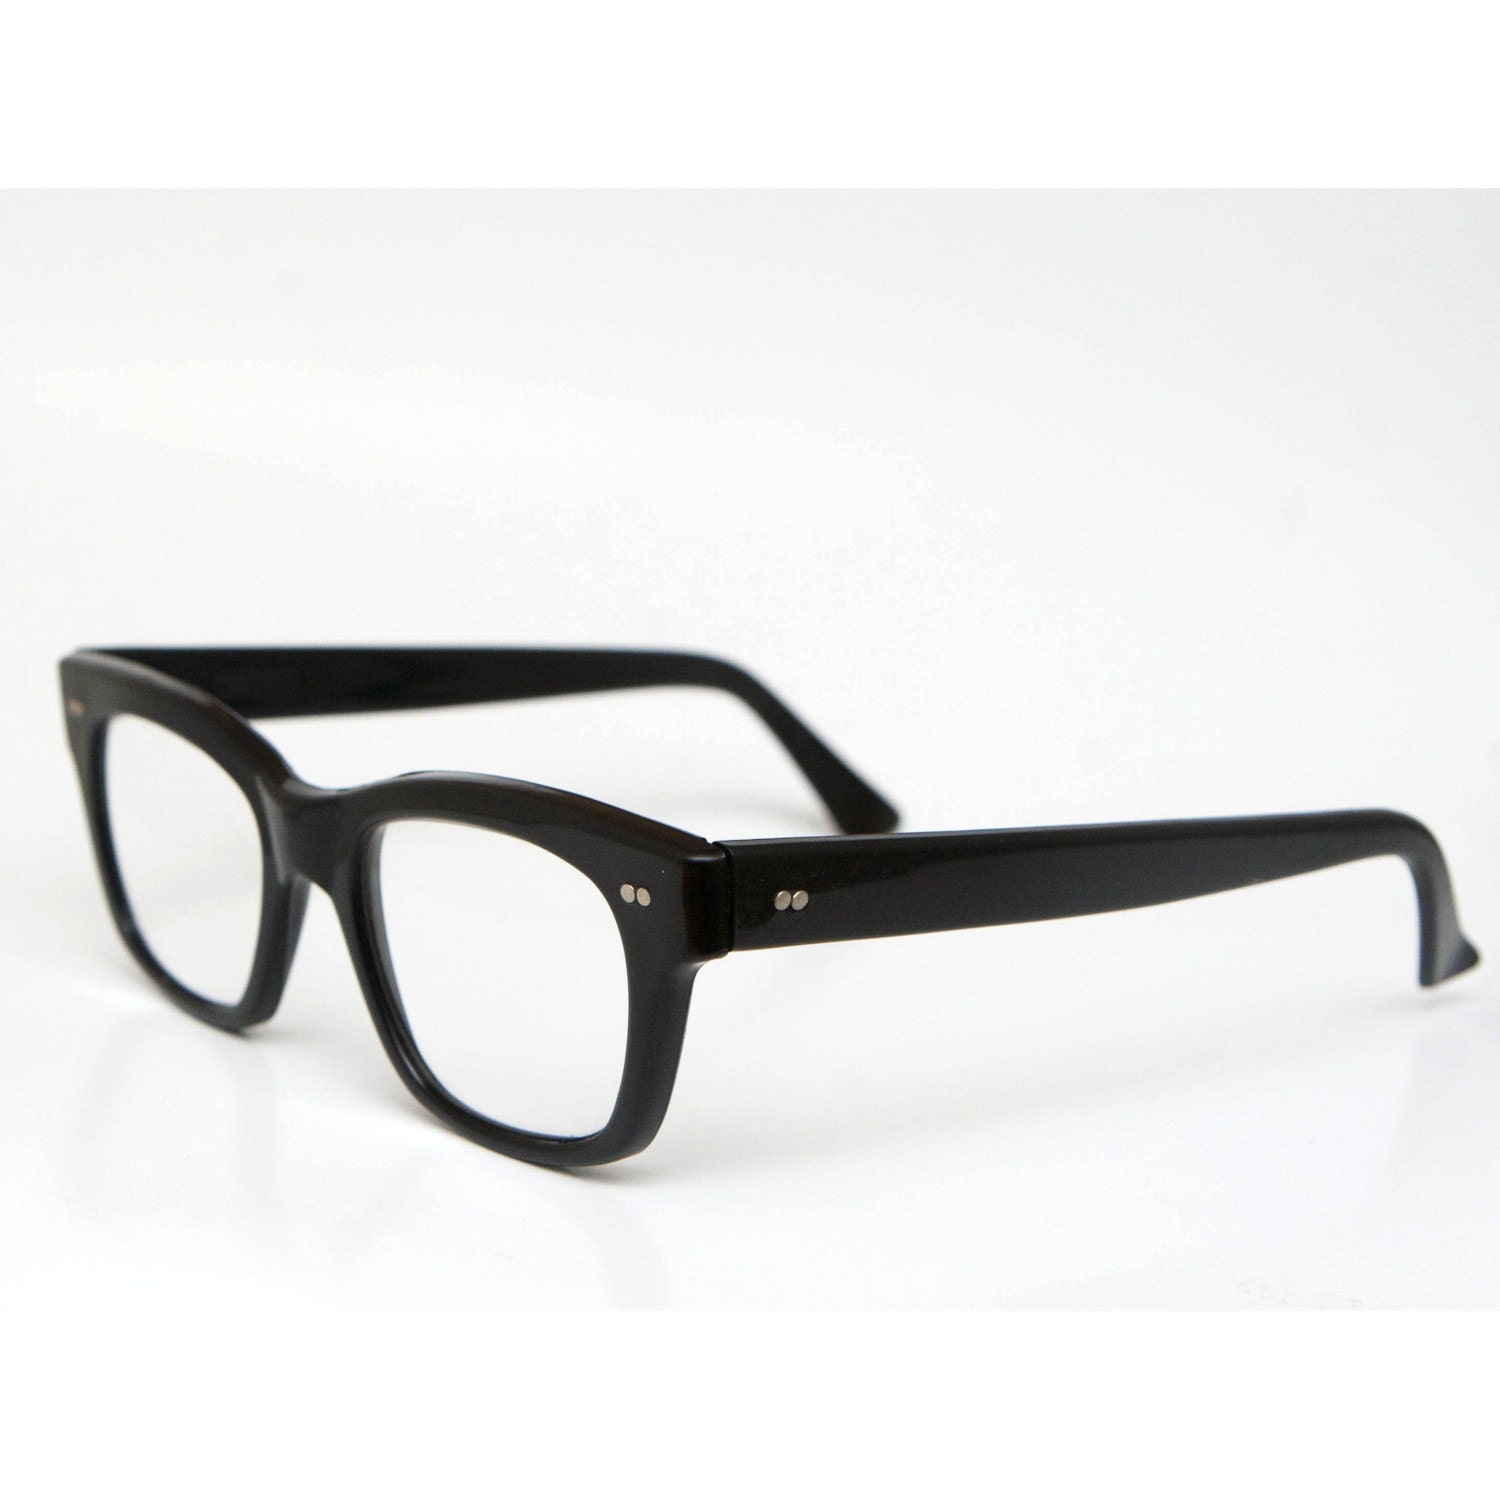 Vintage Black Horn Rim Eyeglasses or Reading Glasses Frame VAM